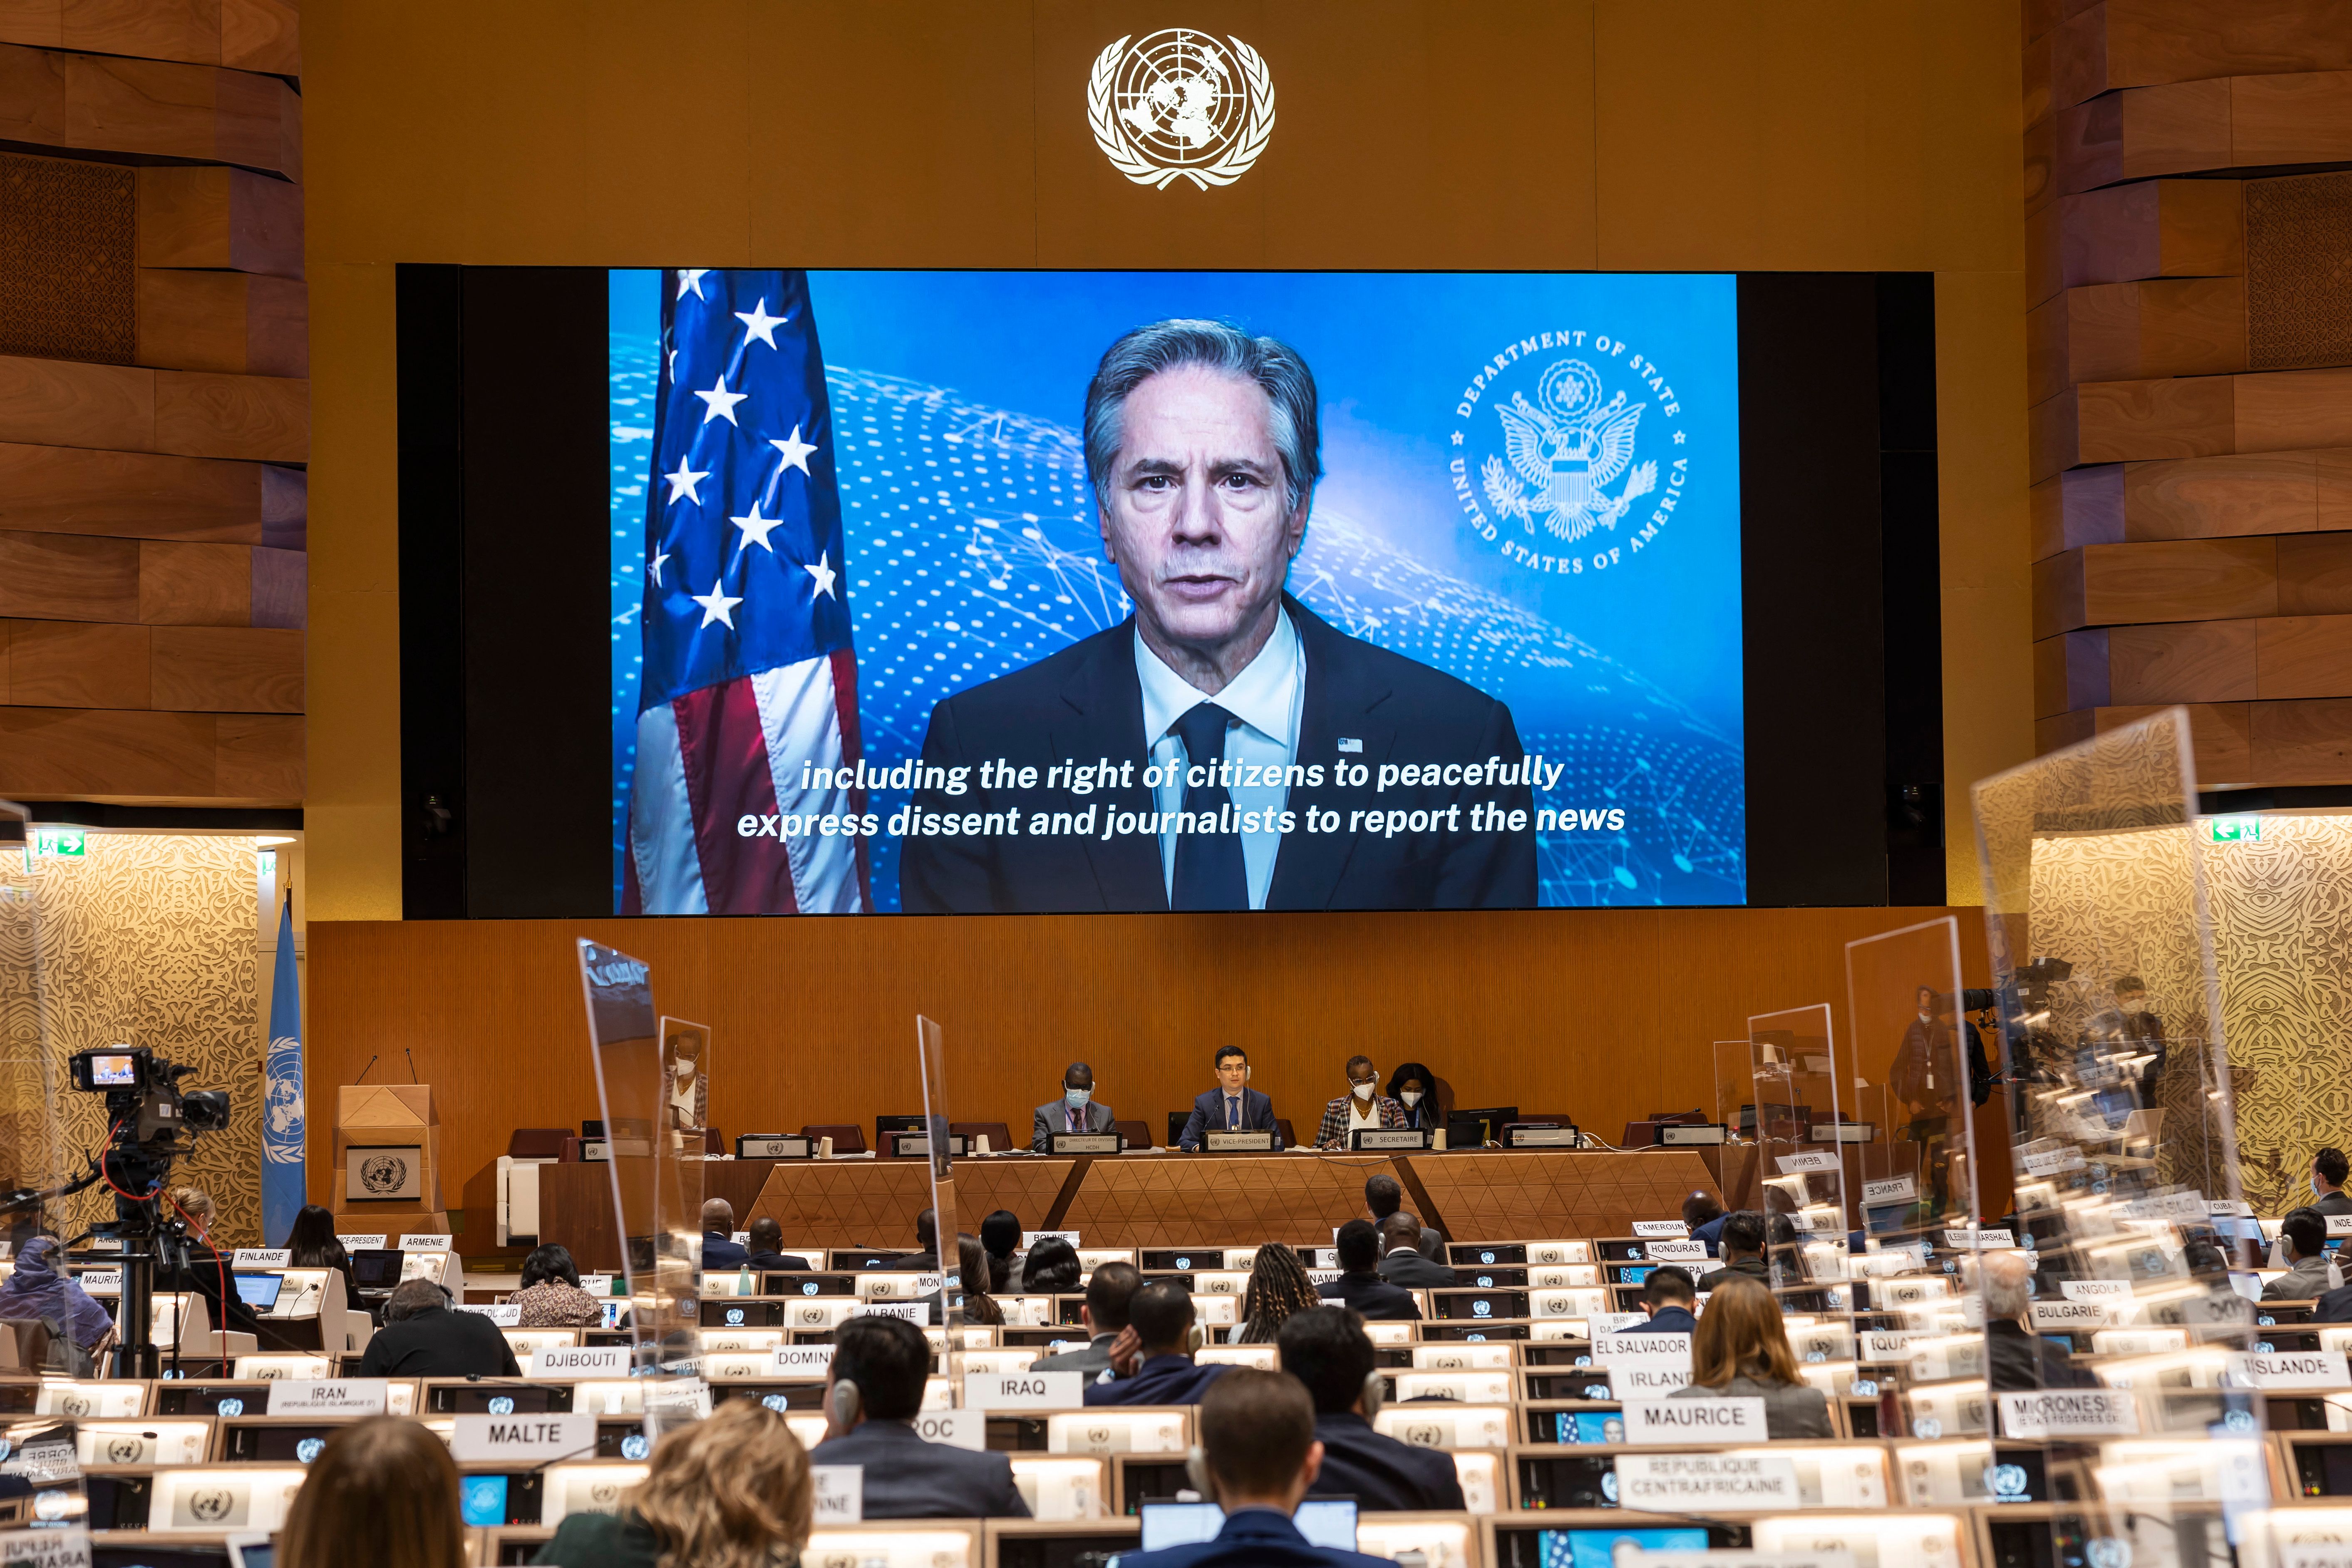 Ngoại trưởng Hoa Kỳ Antony Blinken xuất hiện trên màn hình khi ông có bài phát biểu từ xa, trong phiên họp lần thứ 49 của Hội đồng Nhân quyền Liên hợp quốc tại trụ sở châu Âu của Liên hợp quốc ở Geneva, Thụy Sĩ, vào ngày 1 tháng 3.